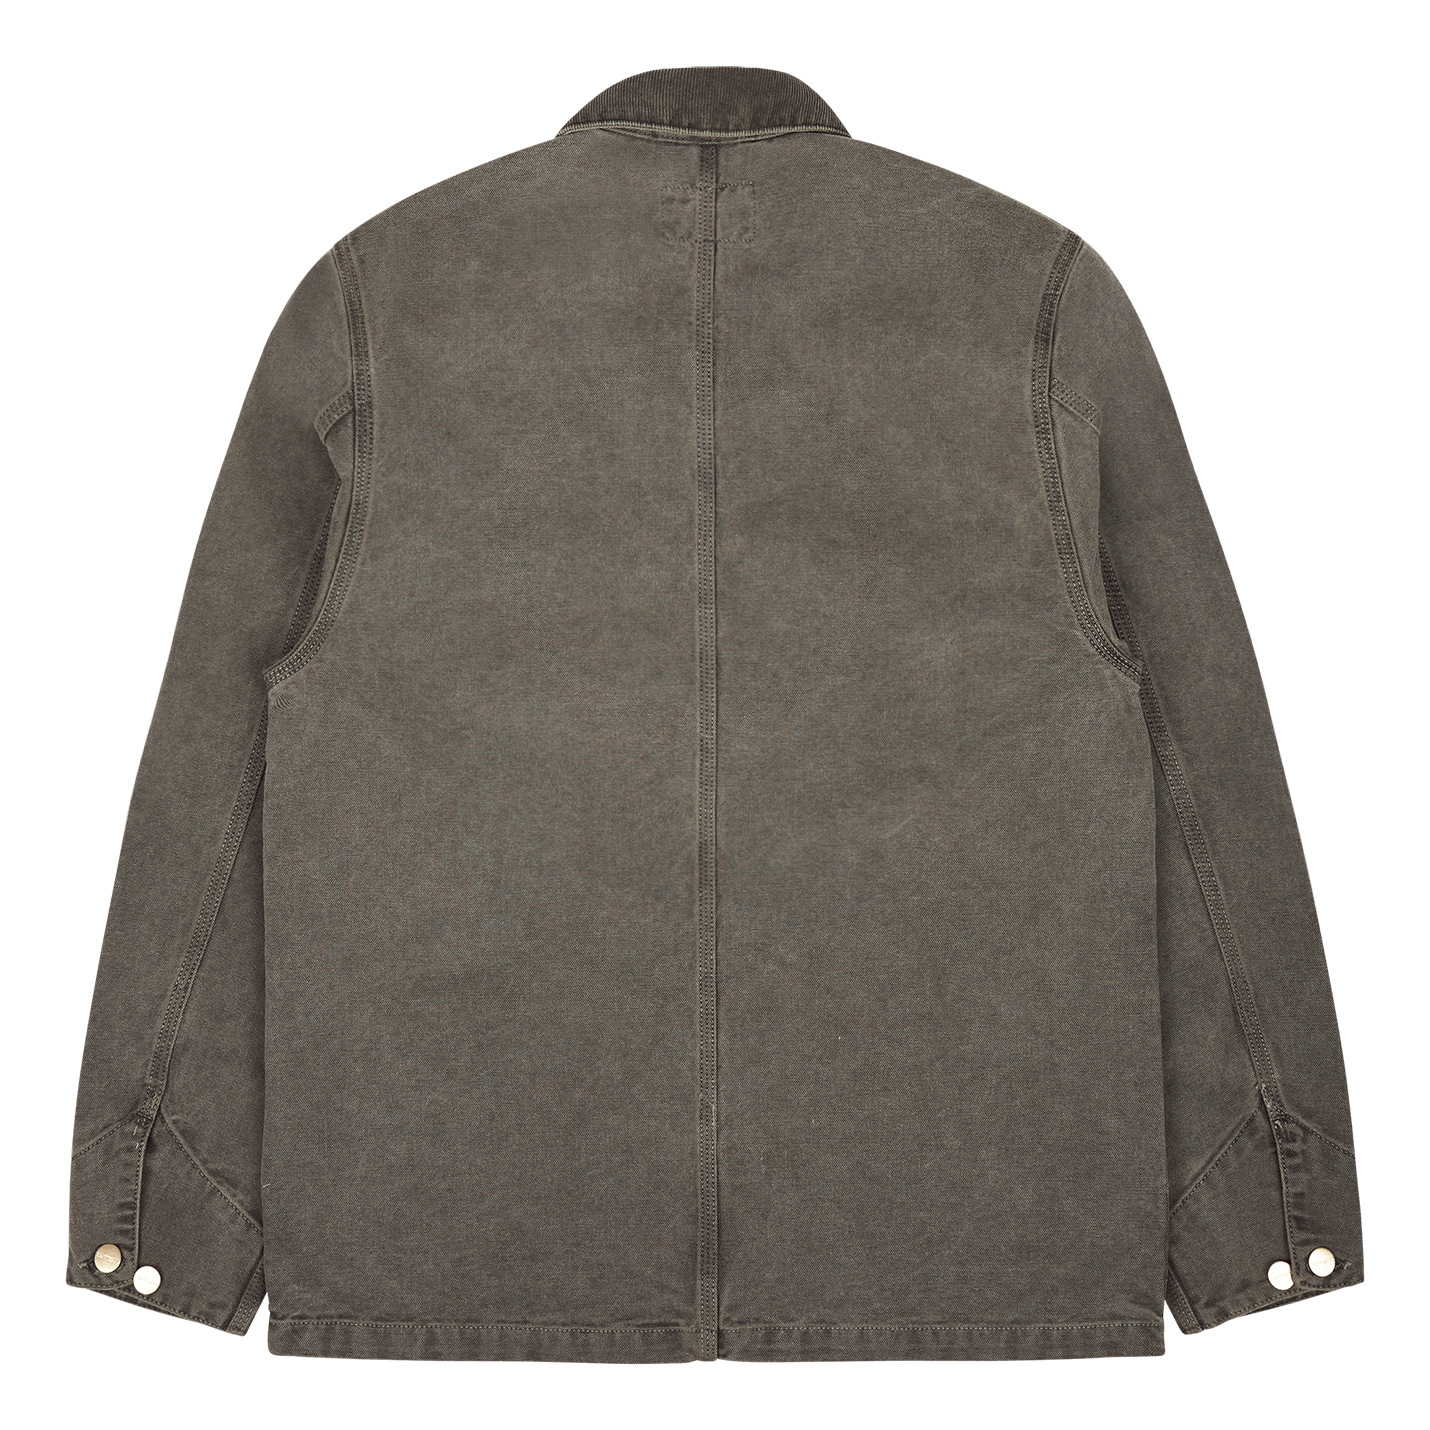 Carhartt WIP - Michigan Coat (Chore Coat) - Black